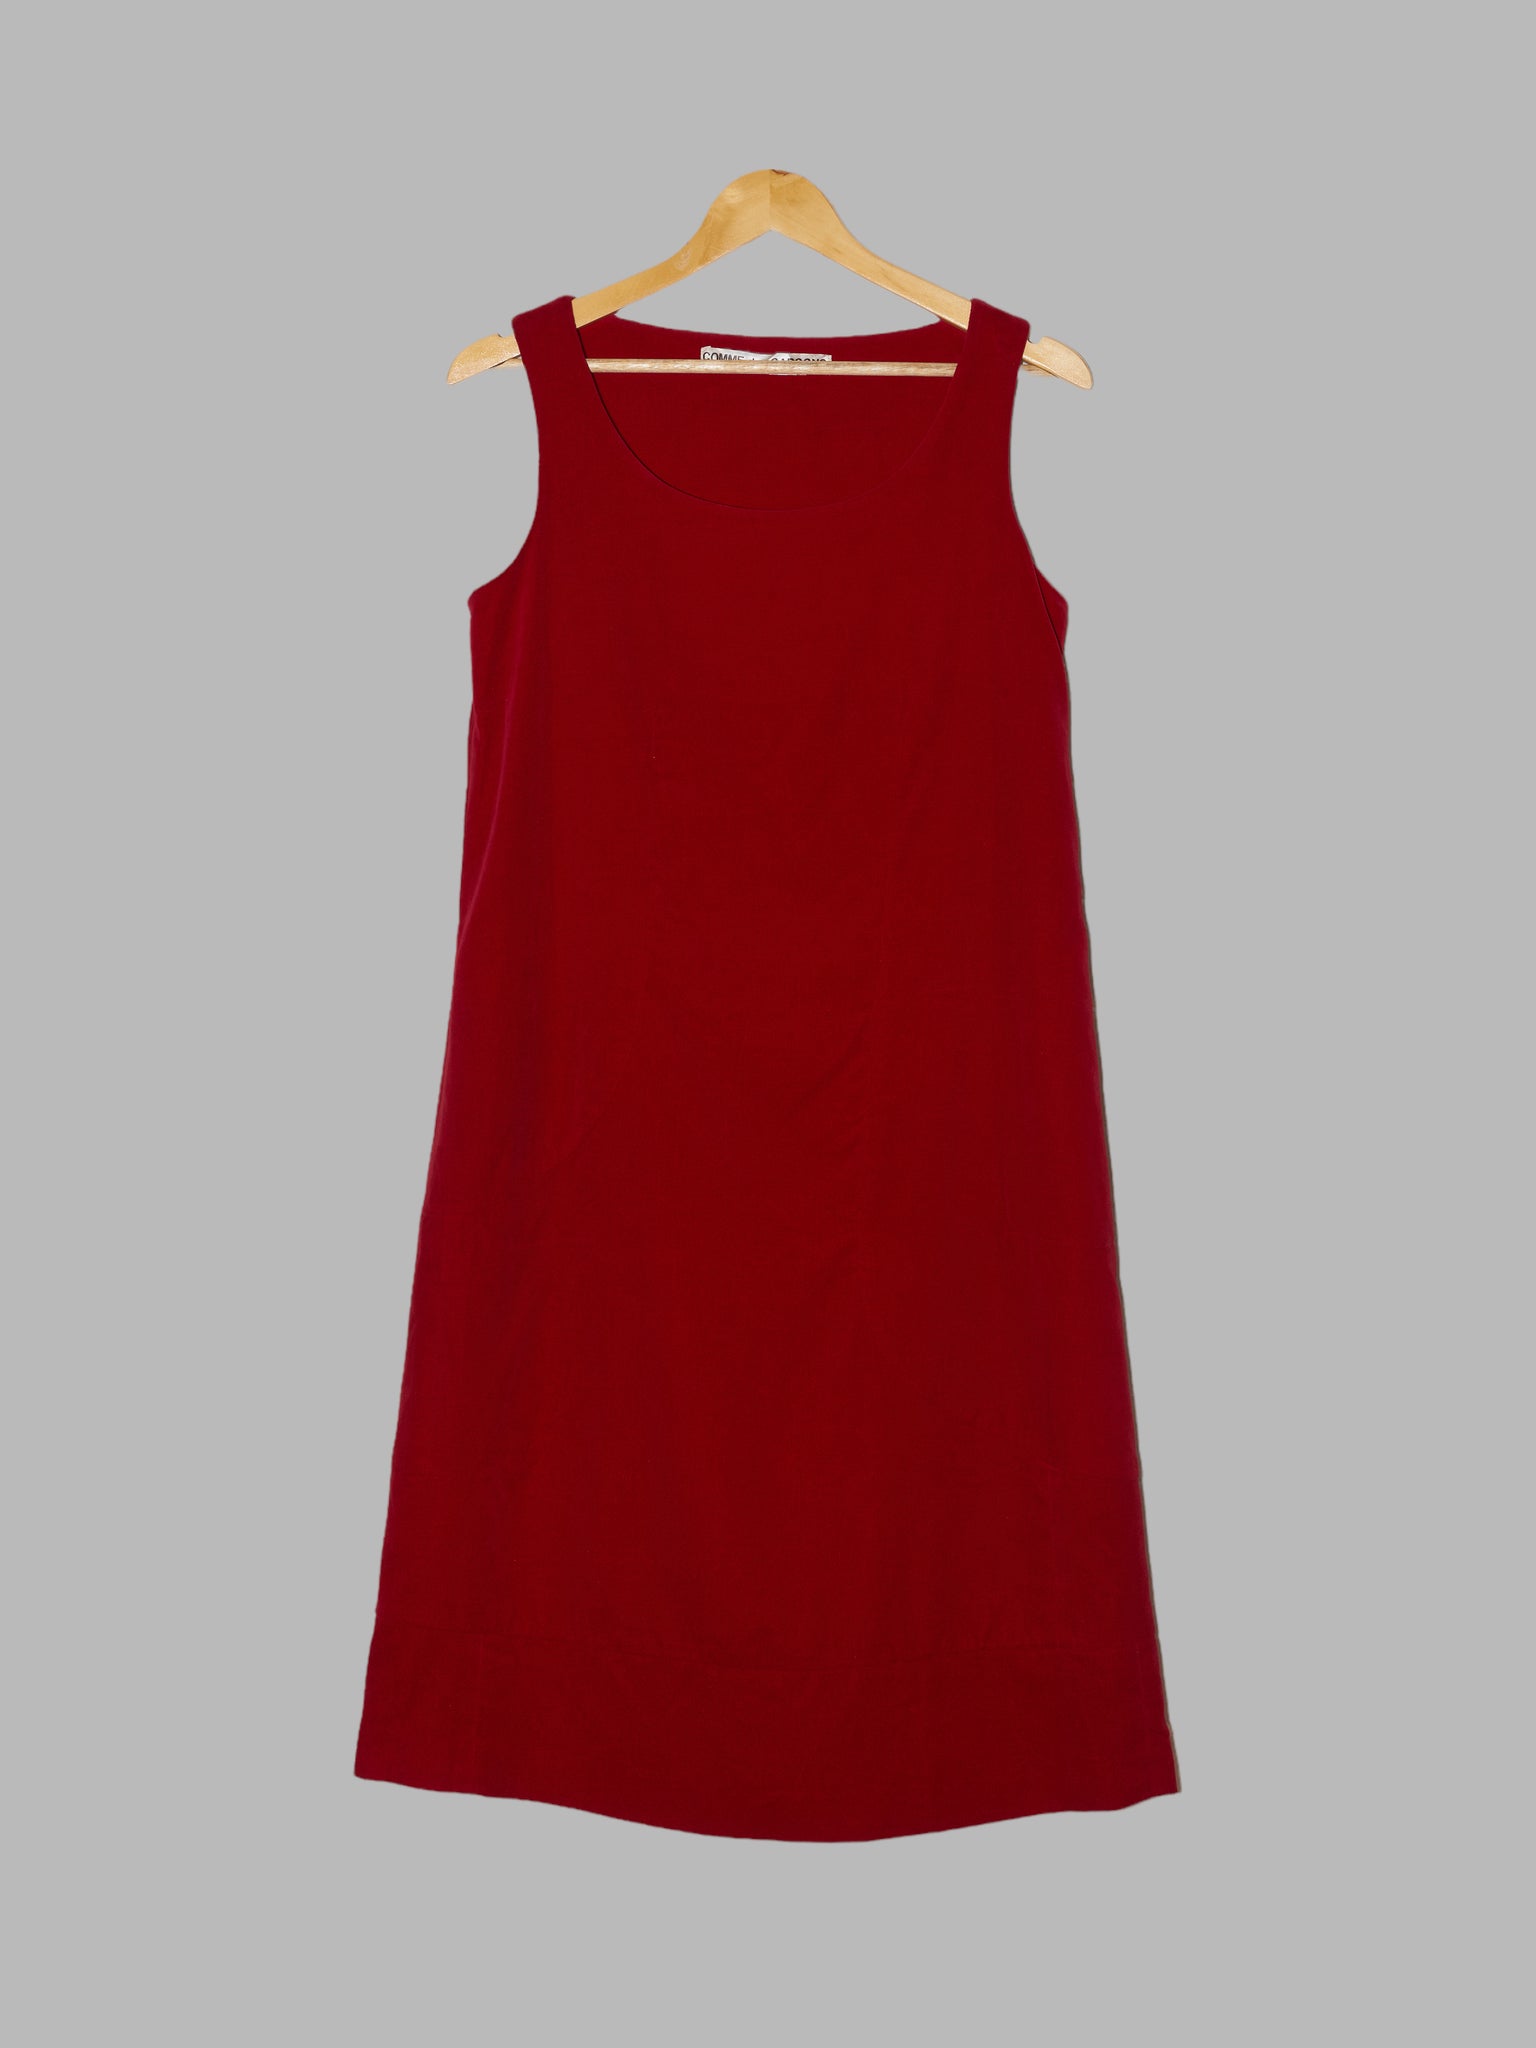 Comme des Garcons AW1995 red velvet sleeveless dress